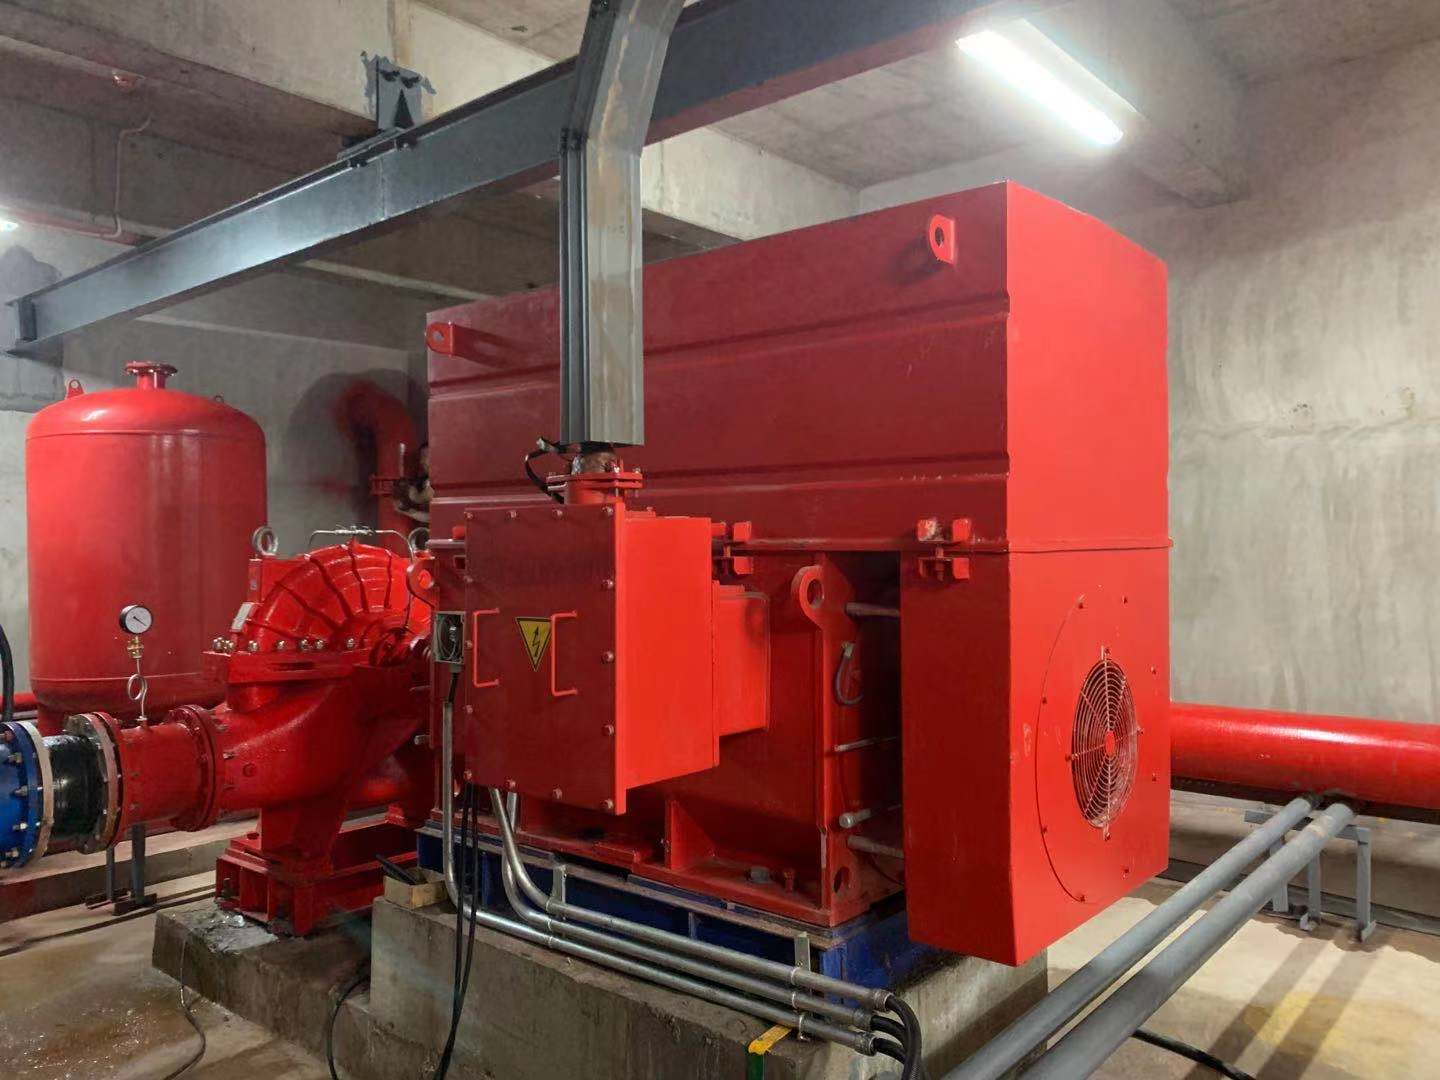 天津东大化工集团项目高压巡检电机启动柜(含机械应急装置)泵房现场